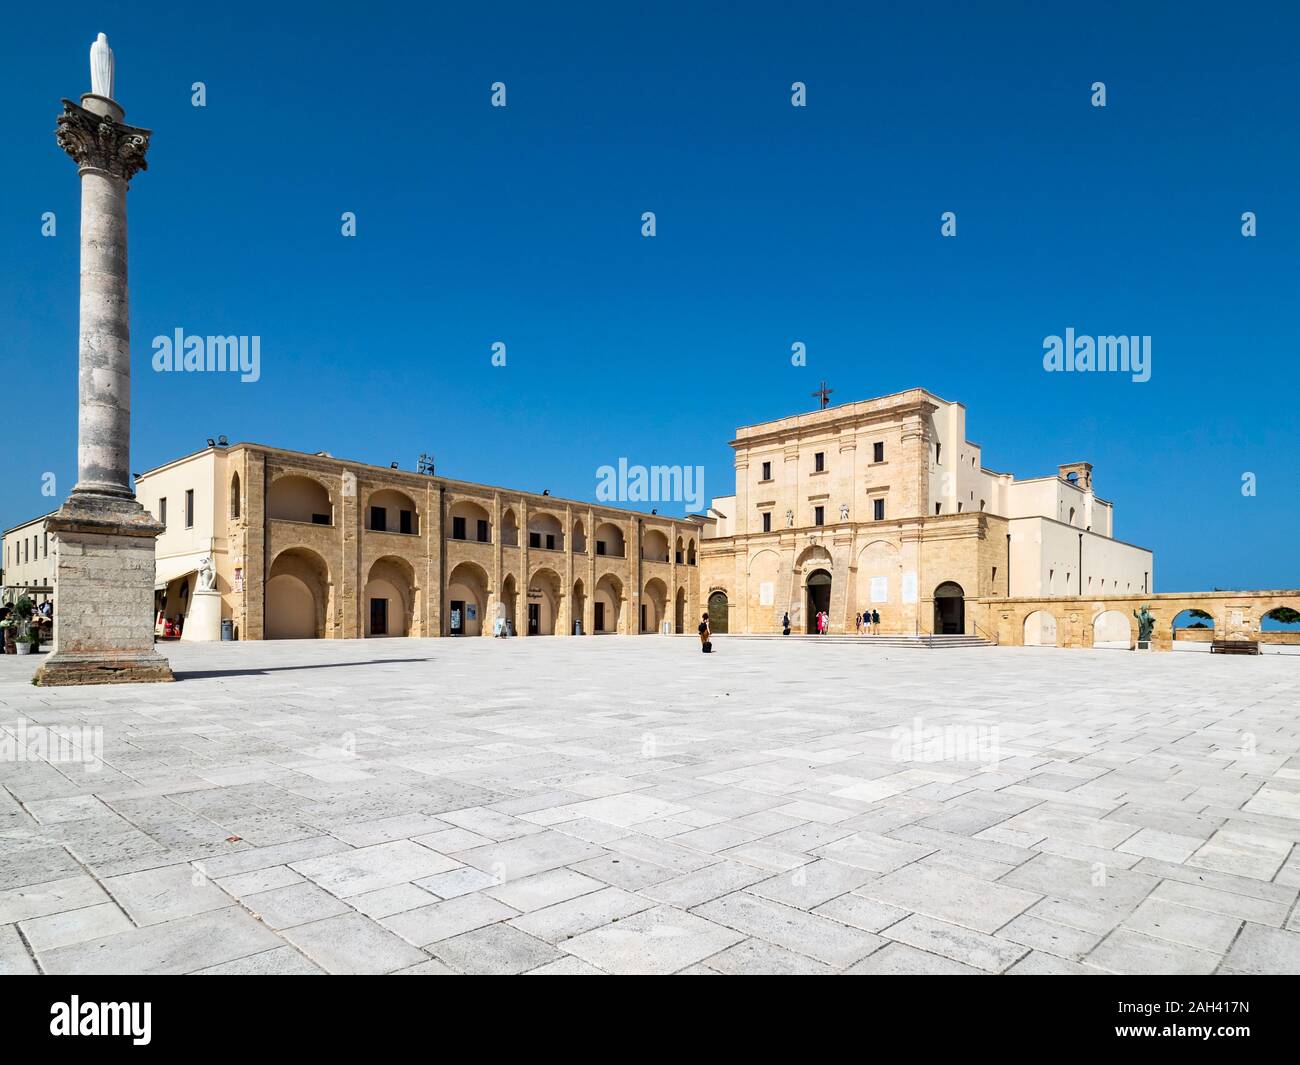 Italia, in provincia di Lecce e Santa Maria di Leuca, cielo chiaro sulla piazza della Basilica Santuario di Santa Maria de finibus terrae Foto Stock